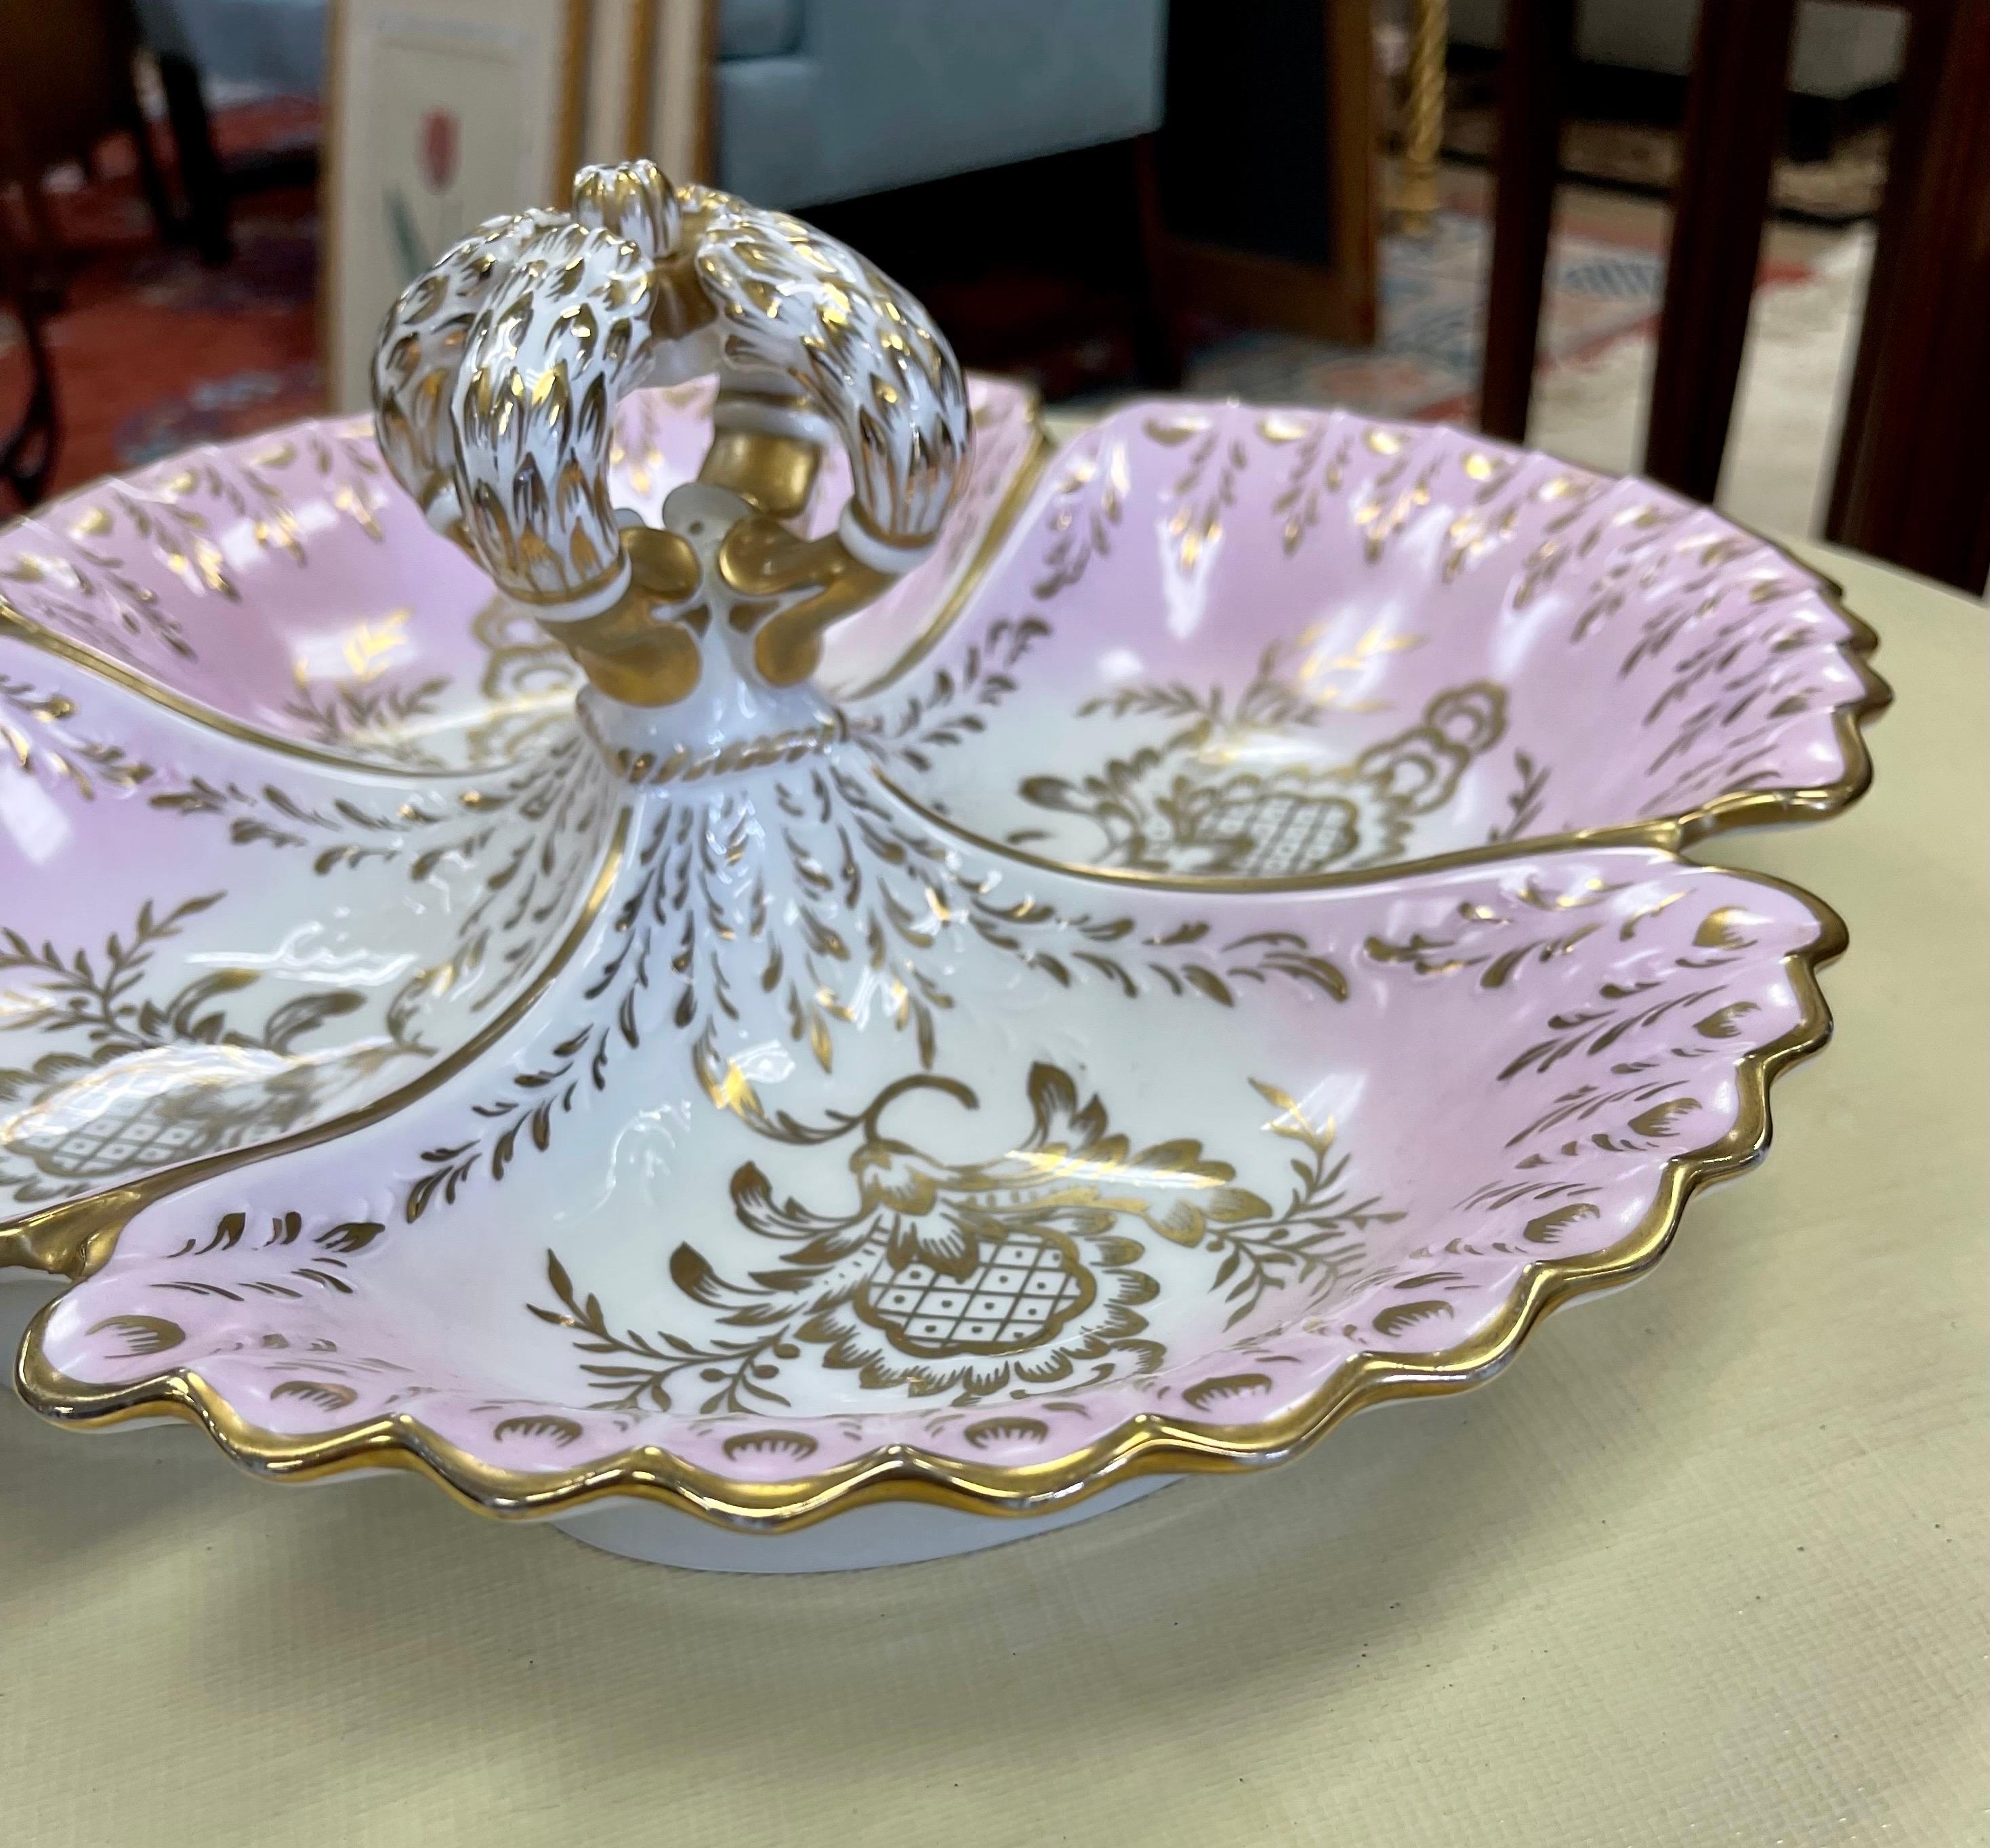 1940's Porcelain Pink and Gold Porcelain Divided Server Dish Platter For Sale 1